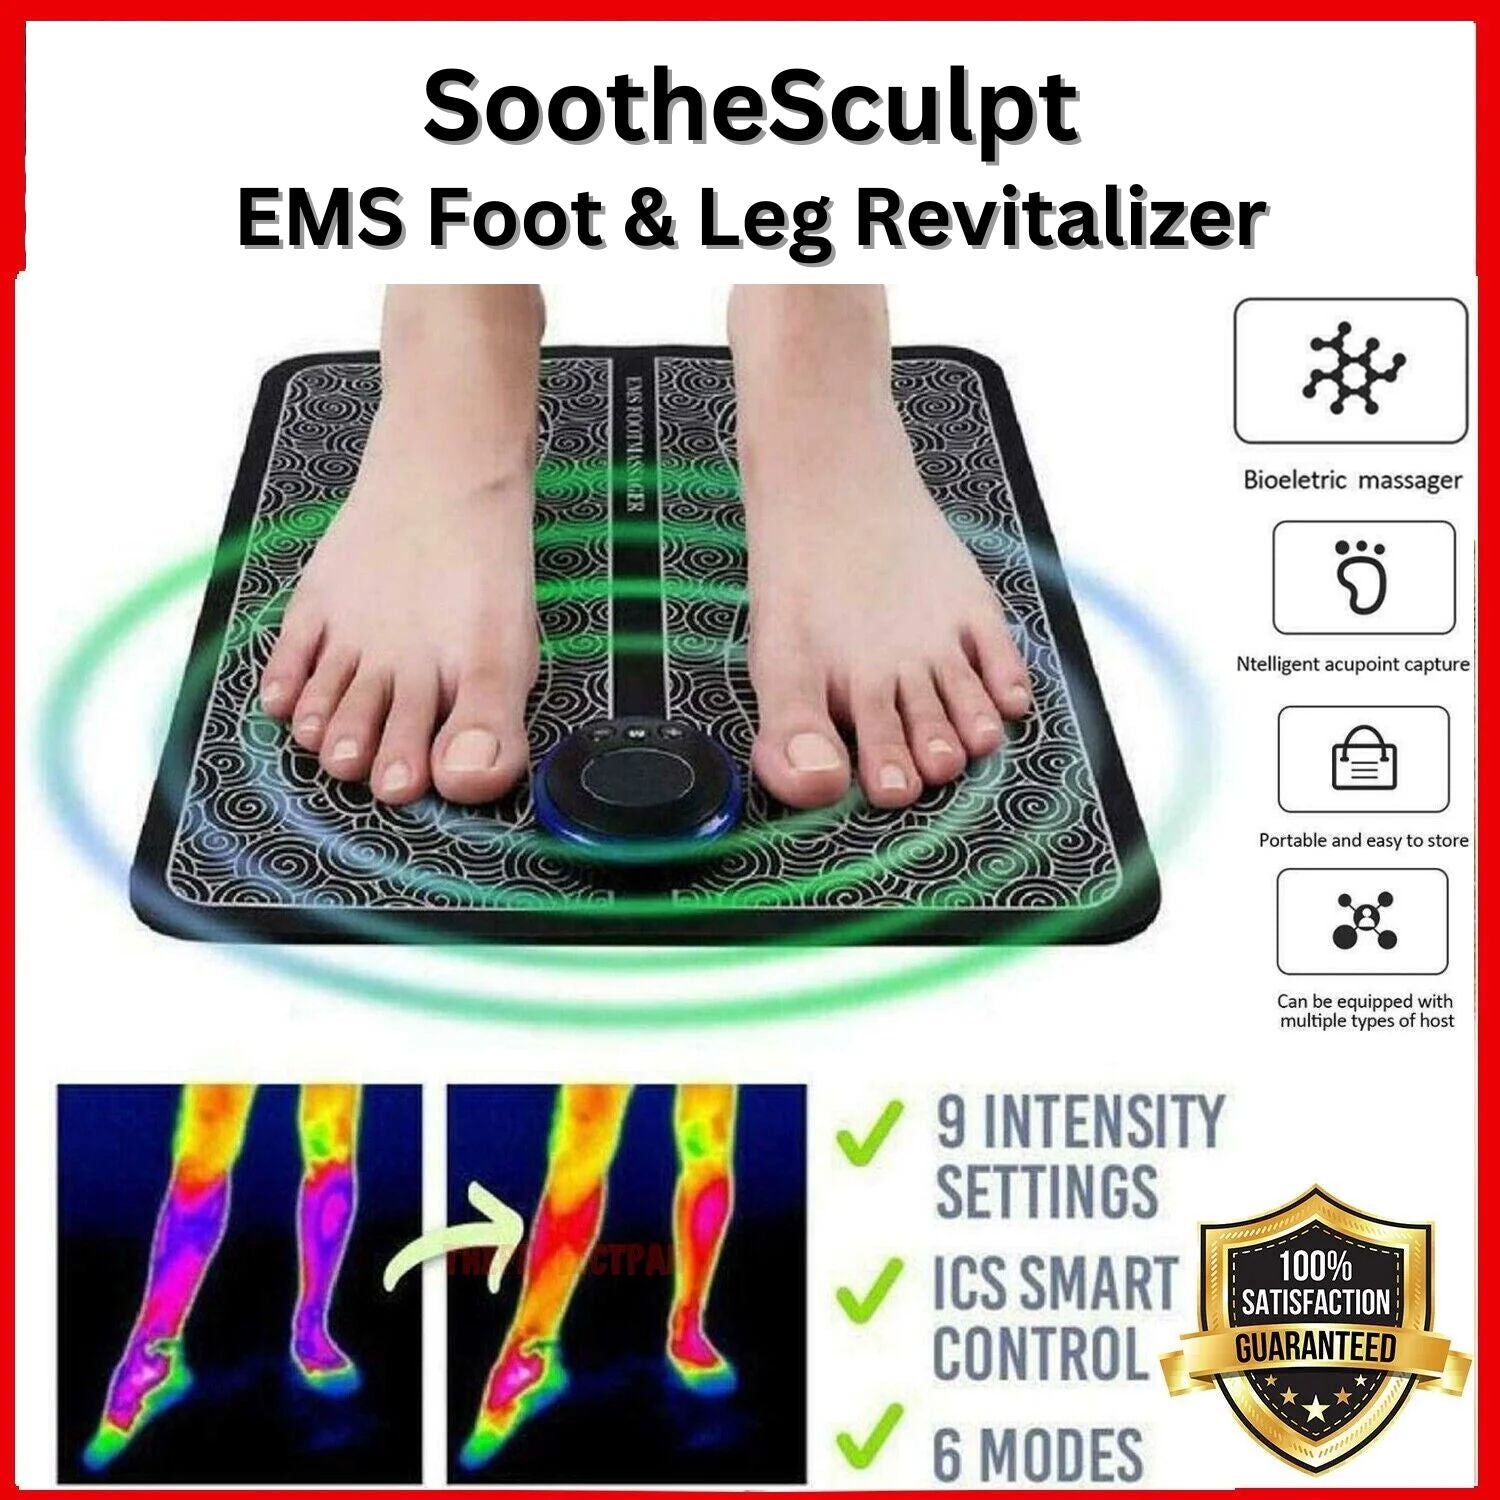 SootheSculpt EMS Foot & Leg Massager Revitalizer - Foot & Leg Massager Readi Gear